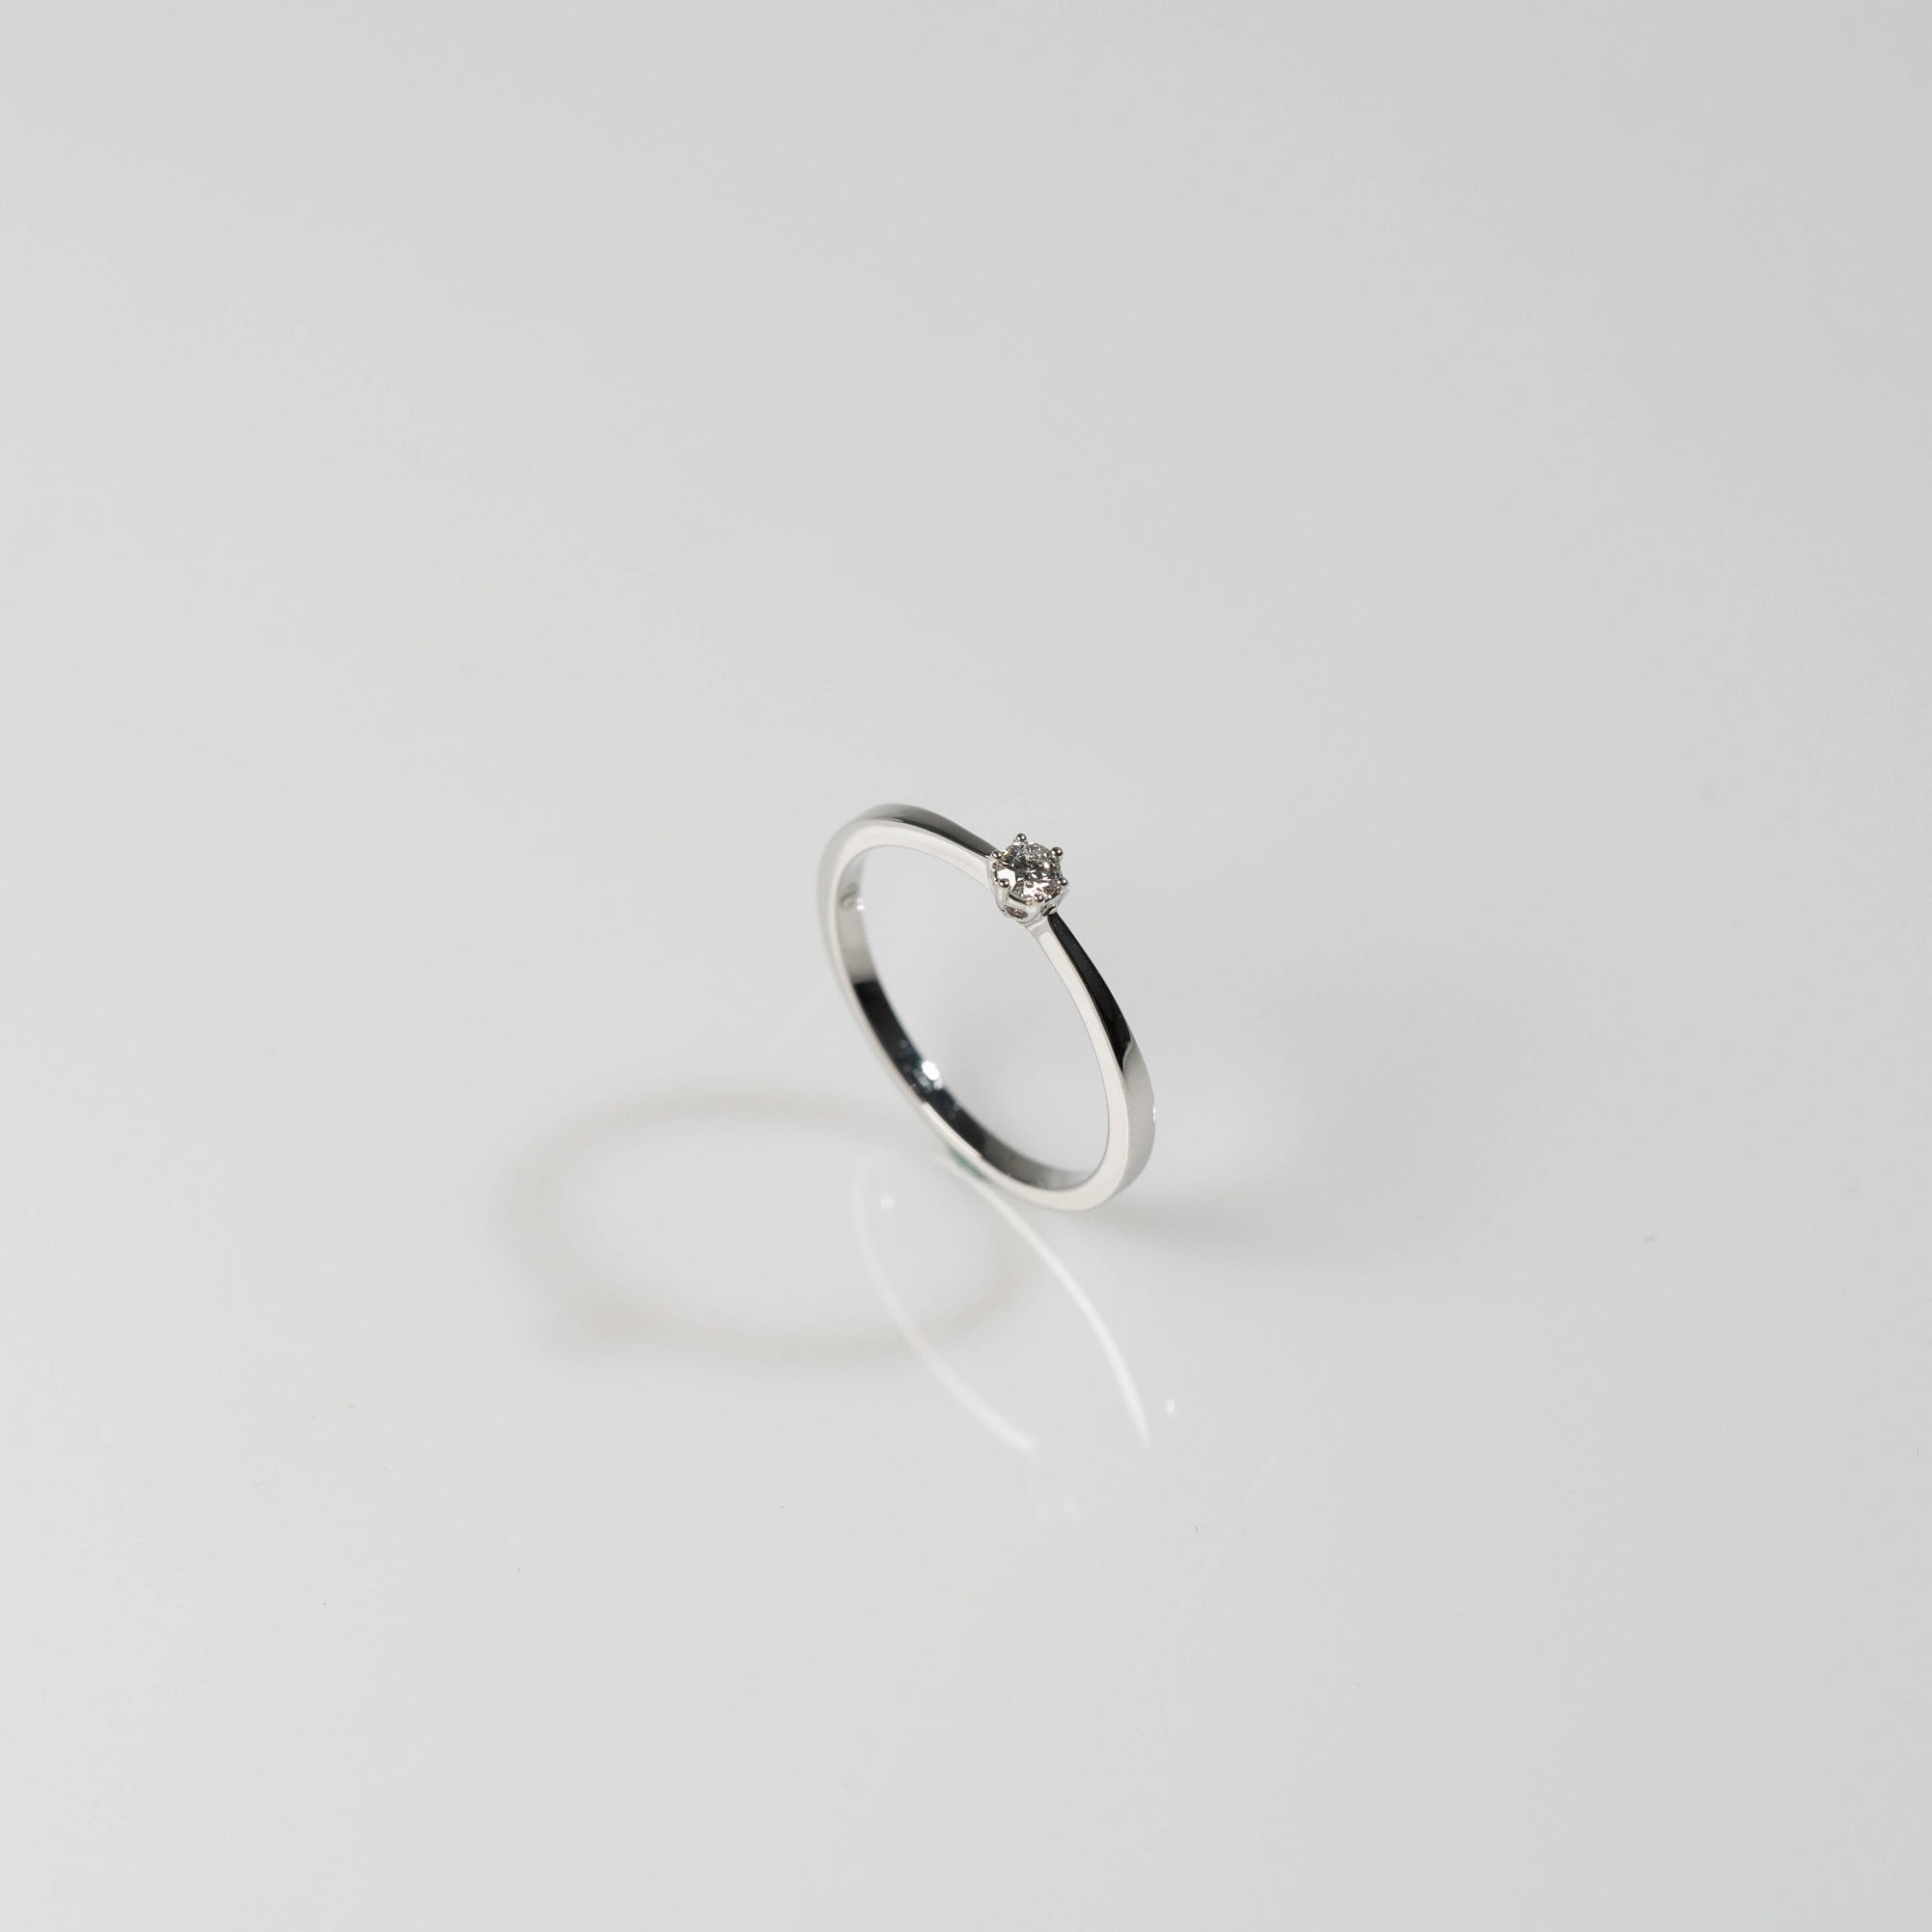 Produktfotografie mit einem Blickwinkel von schräg oben des Weißgold-Verlobungsrings "Promise" aus der Schmuckatelier Lang Collection mit einem in einer 6er Kappe gefassten Diamanten